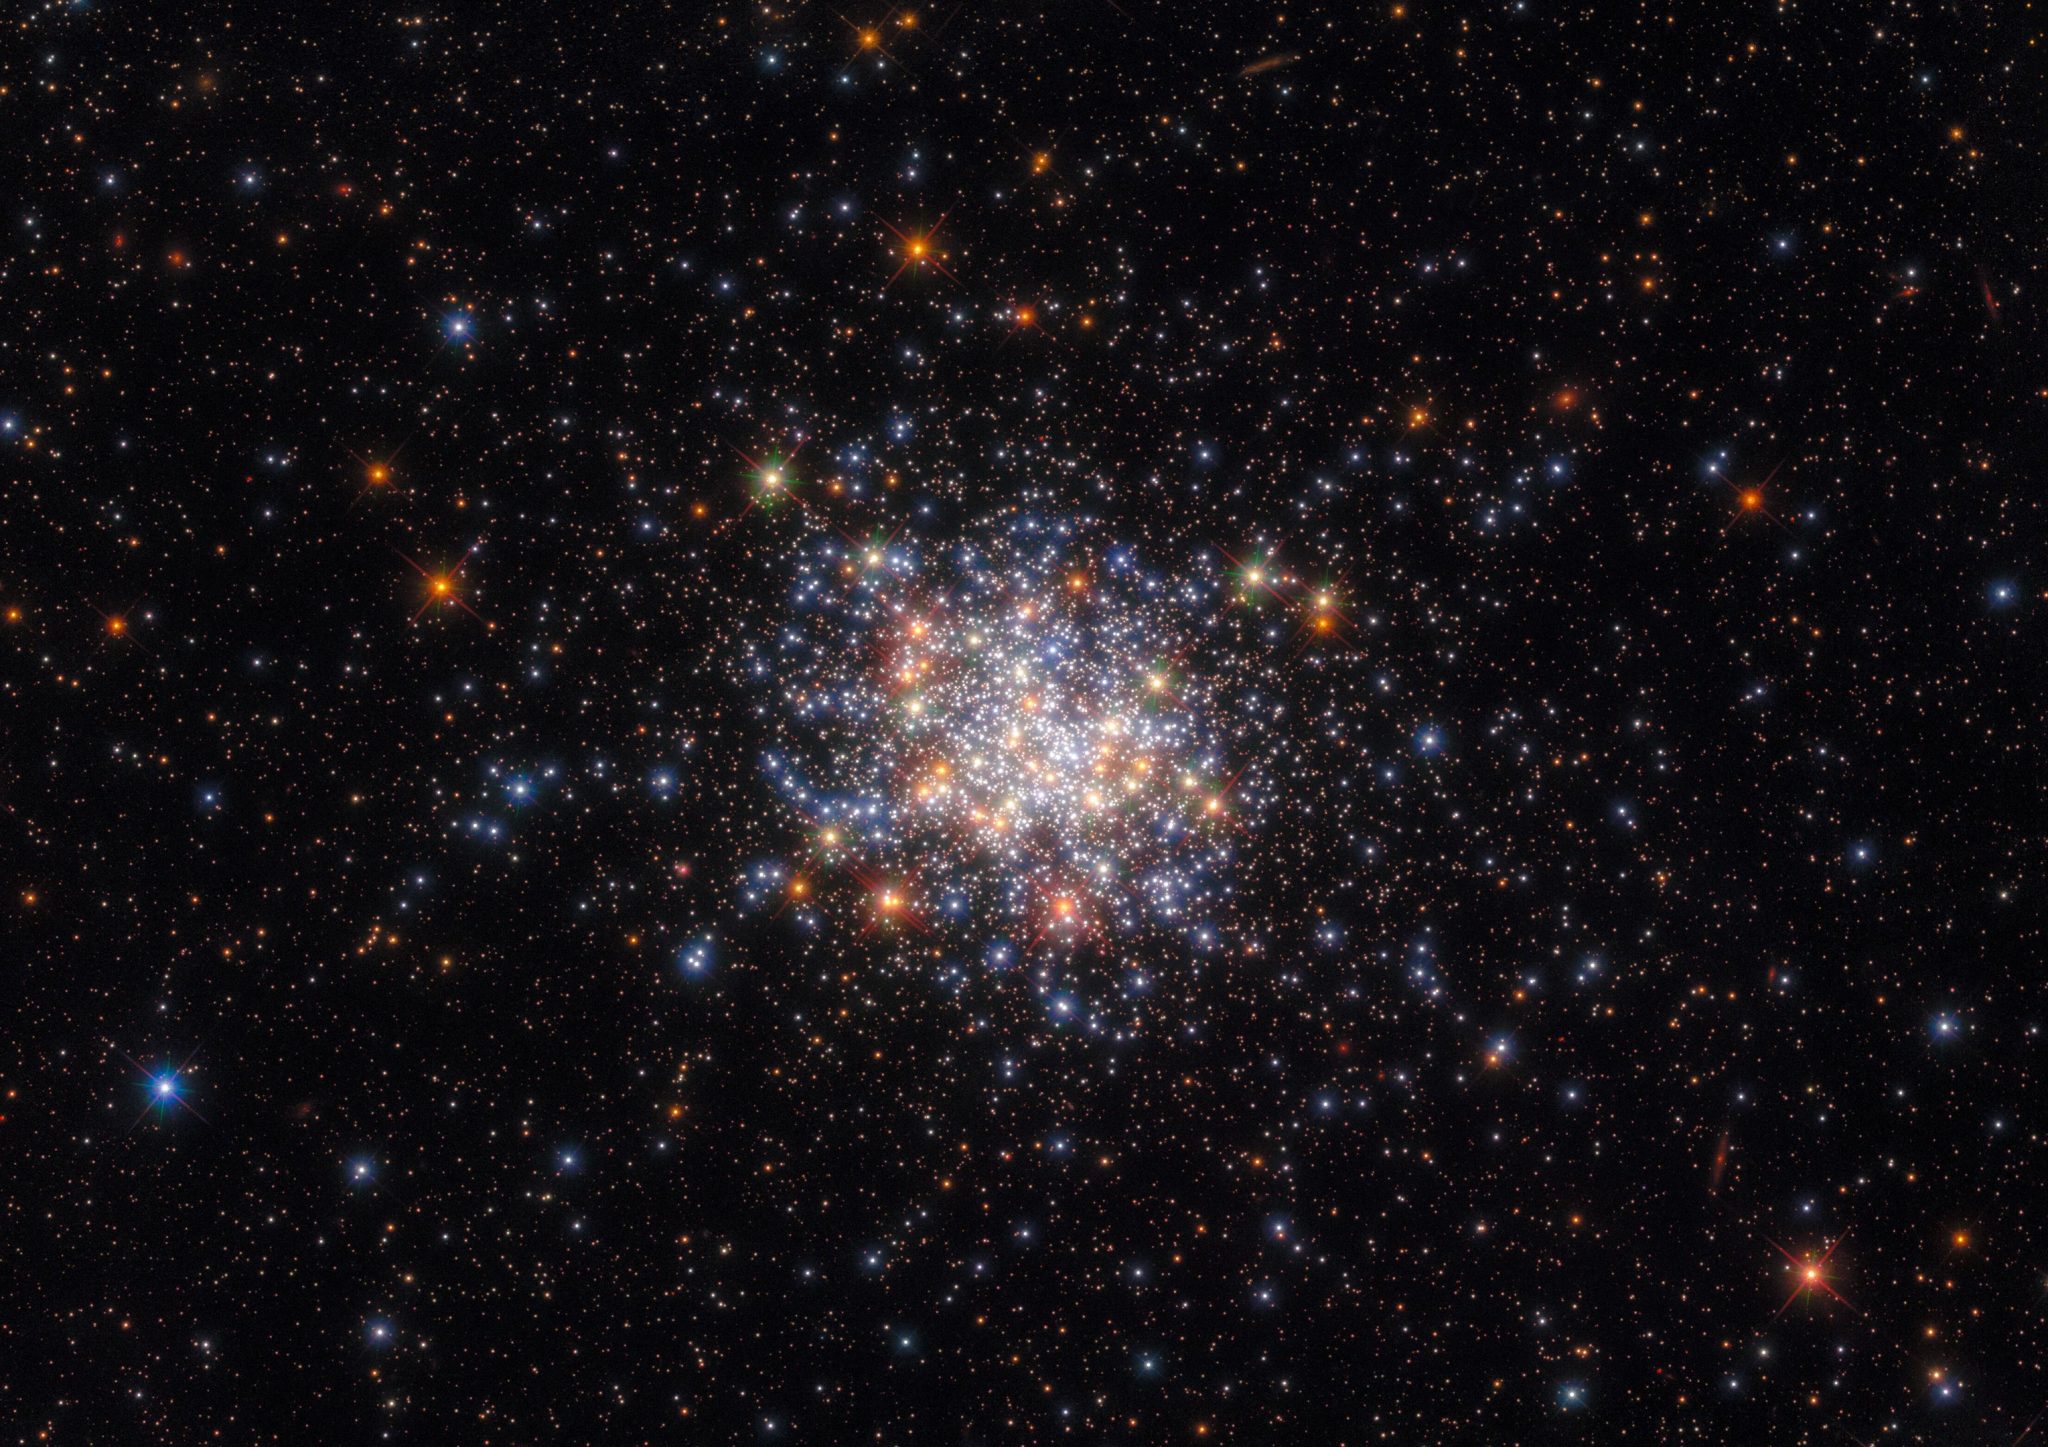 哈勃太空望远镜拍摄的开放式星团NGC 1755